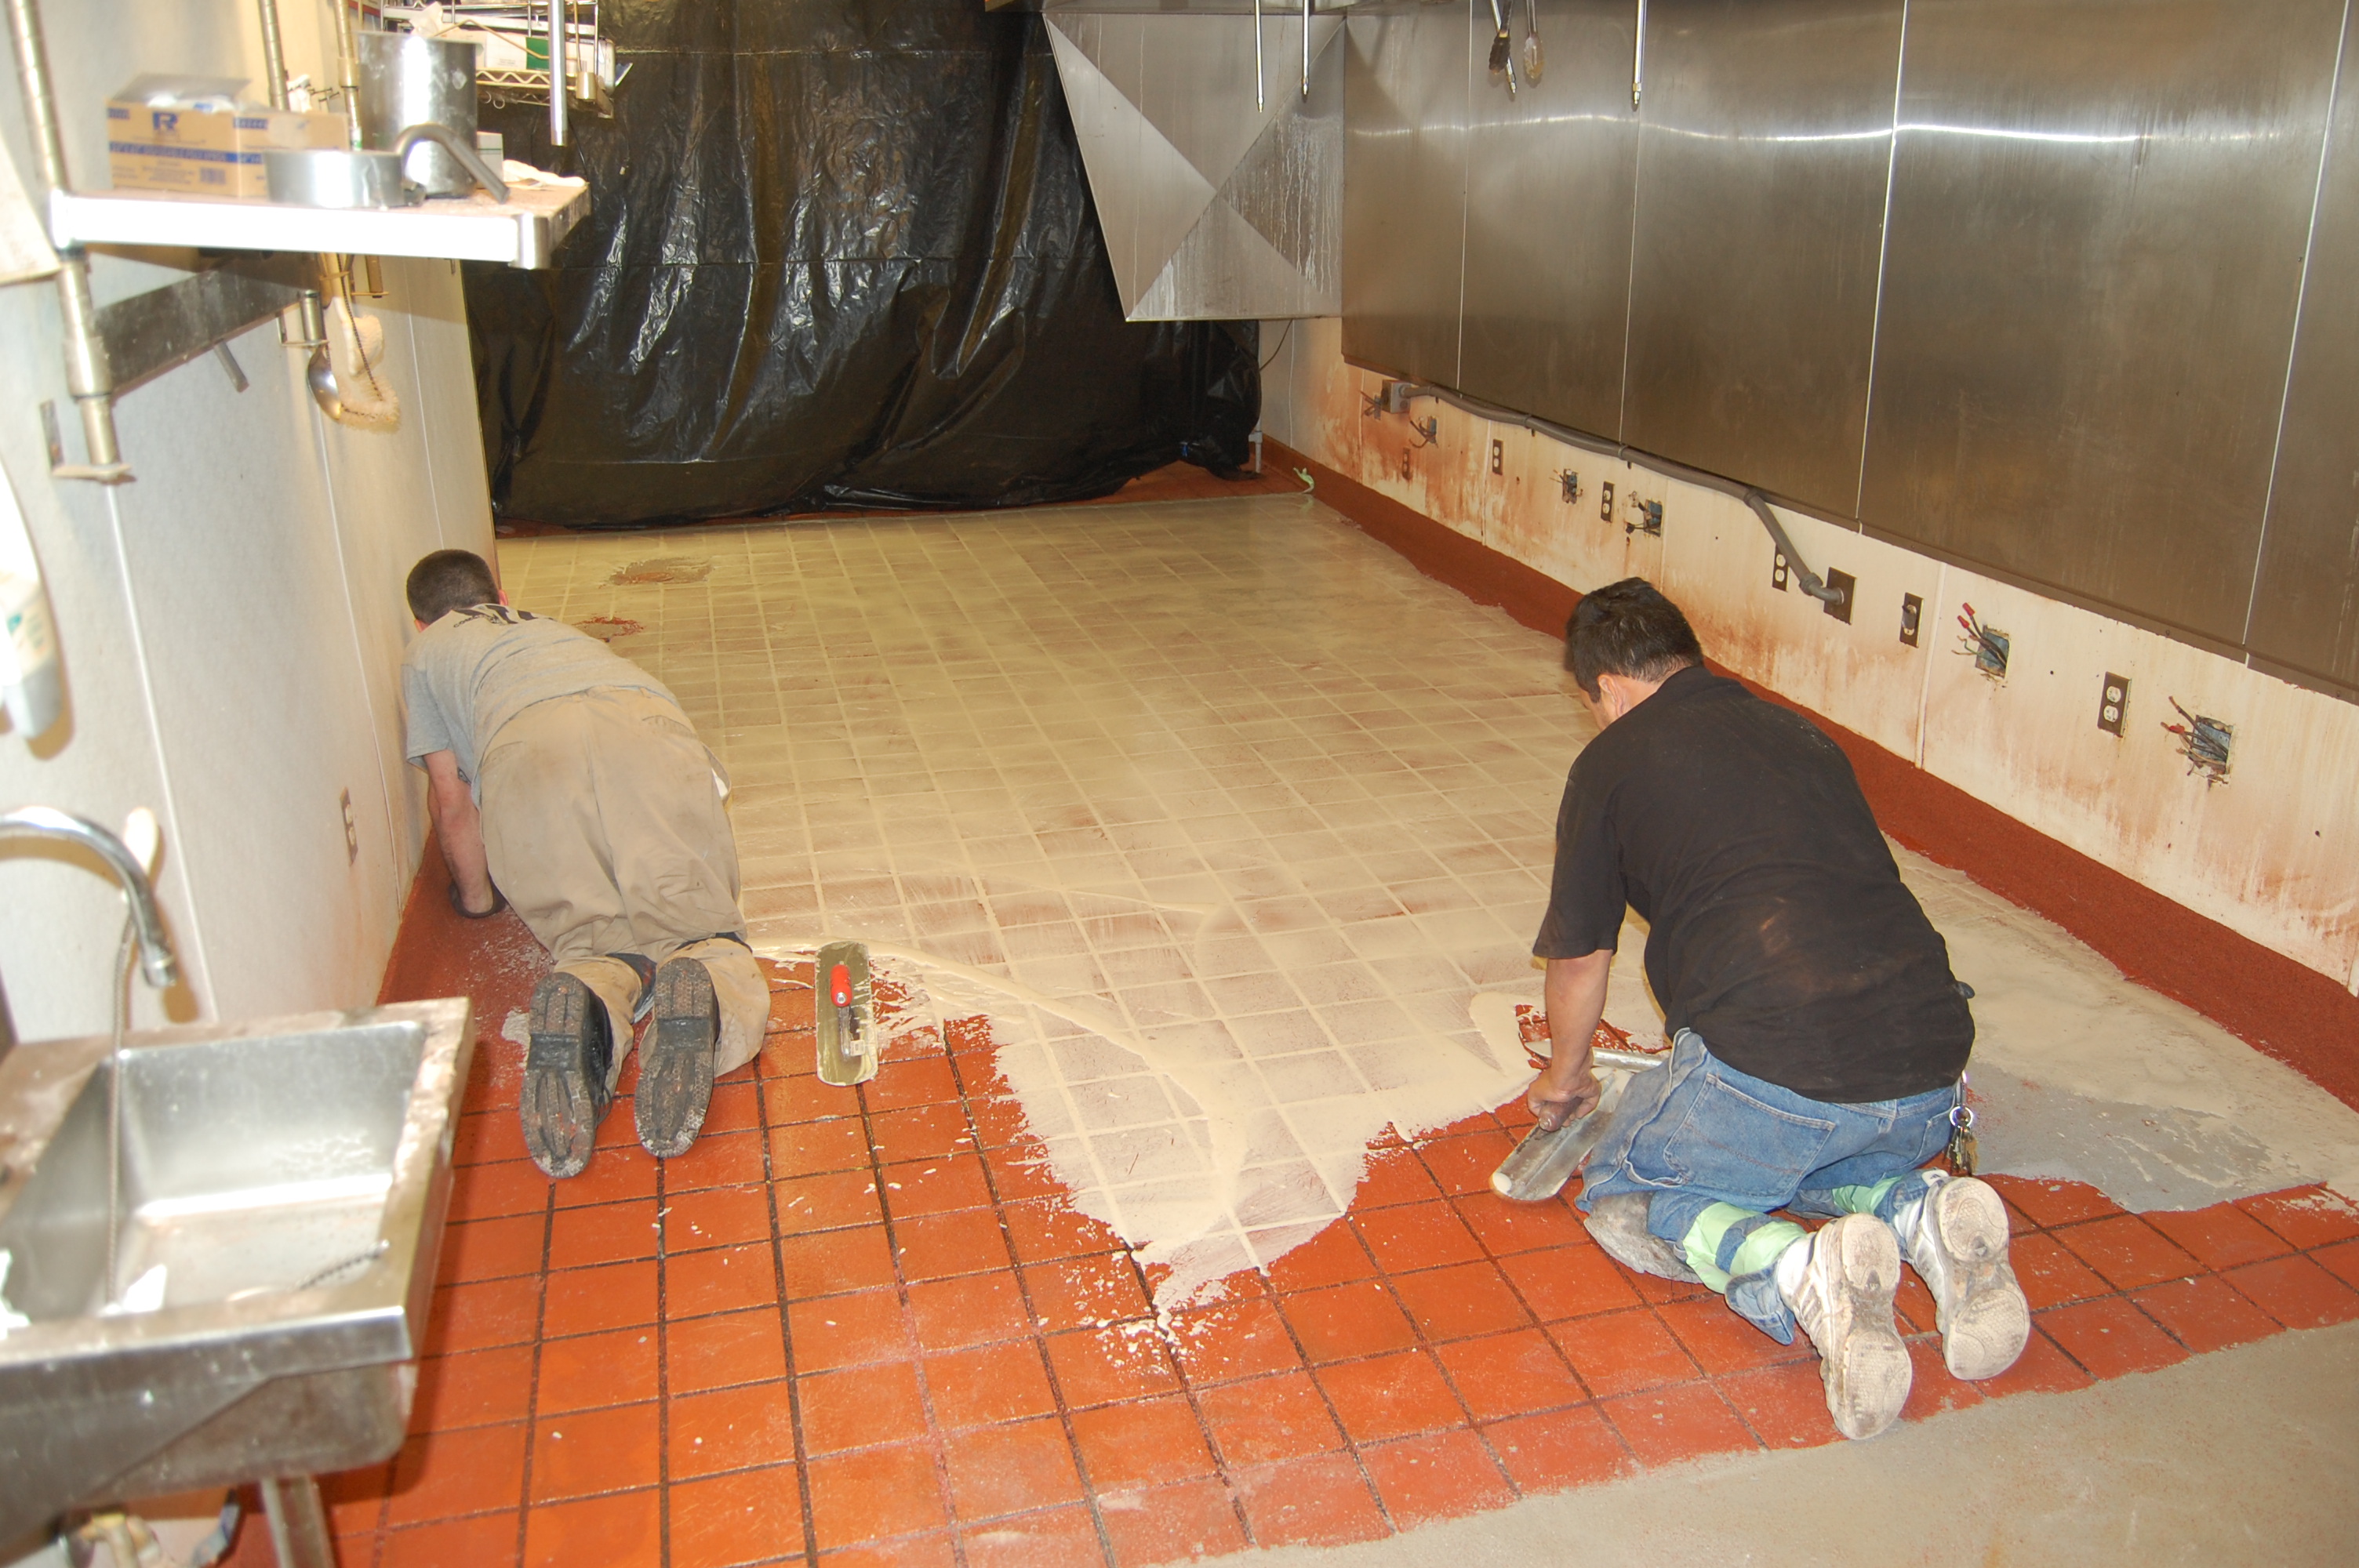 Covering Floor Tiles, Covering Kitchen Floor Tiles